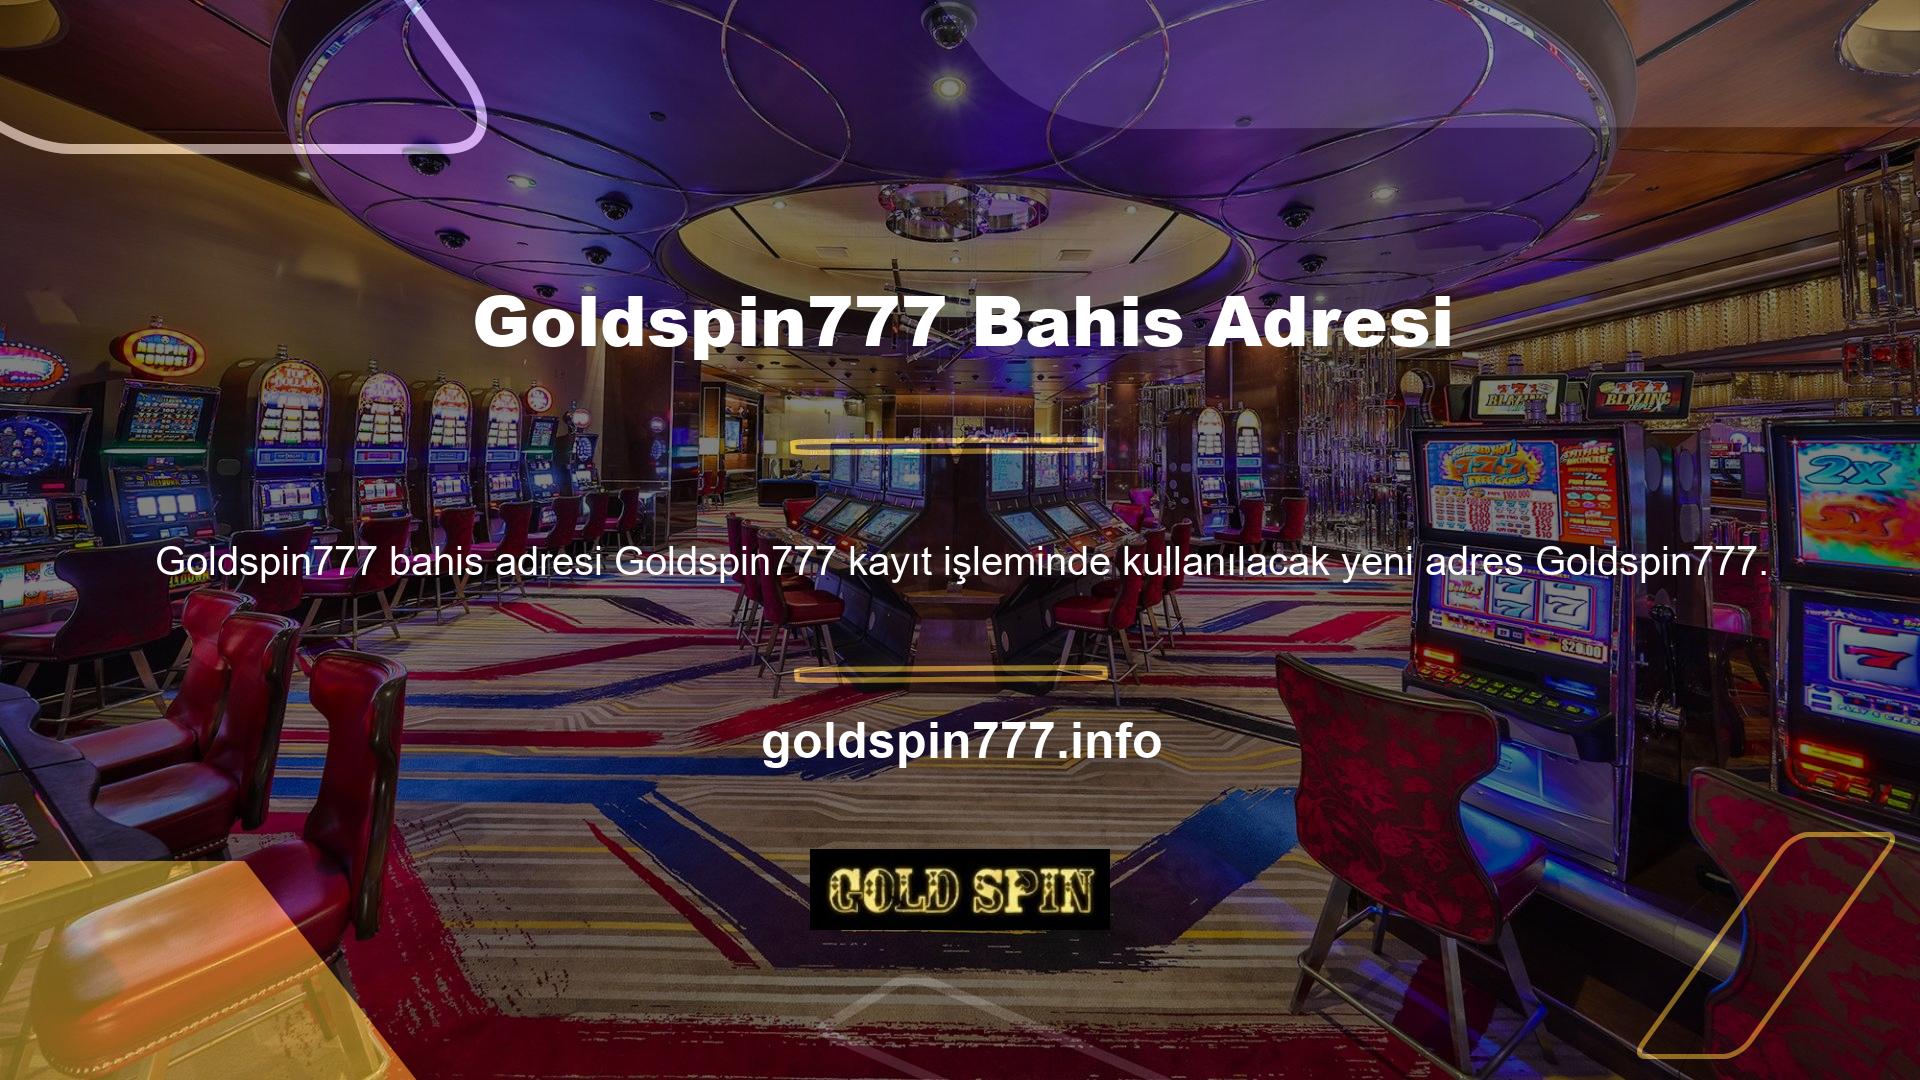 Kısa bir süre için geçerli olan ve daha sonra tekrar güncellenen Goldspin777 adreslere ilişkin en doğru ve güncel bilgilere sitemizden ulaşabilirsiniz